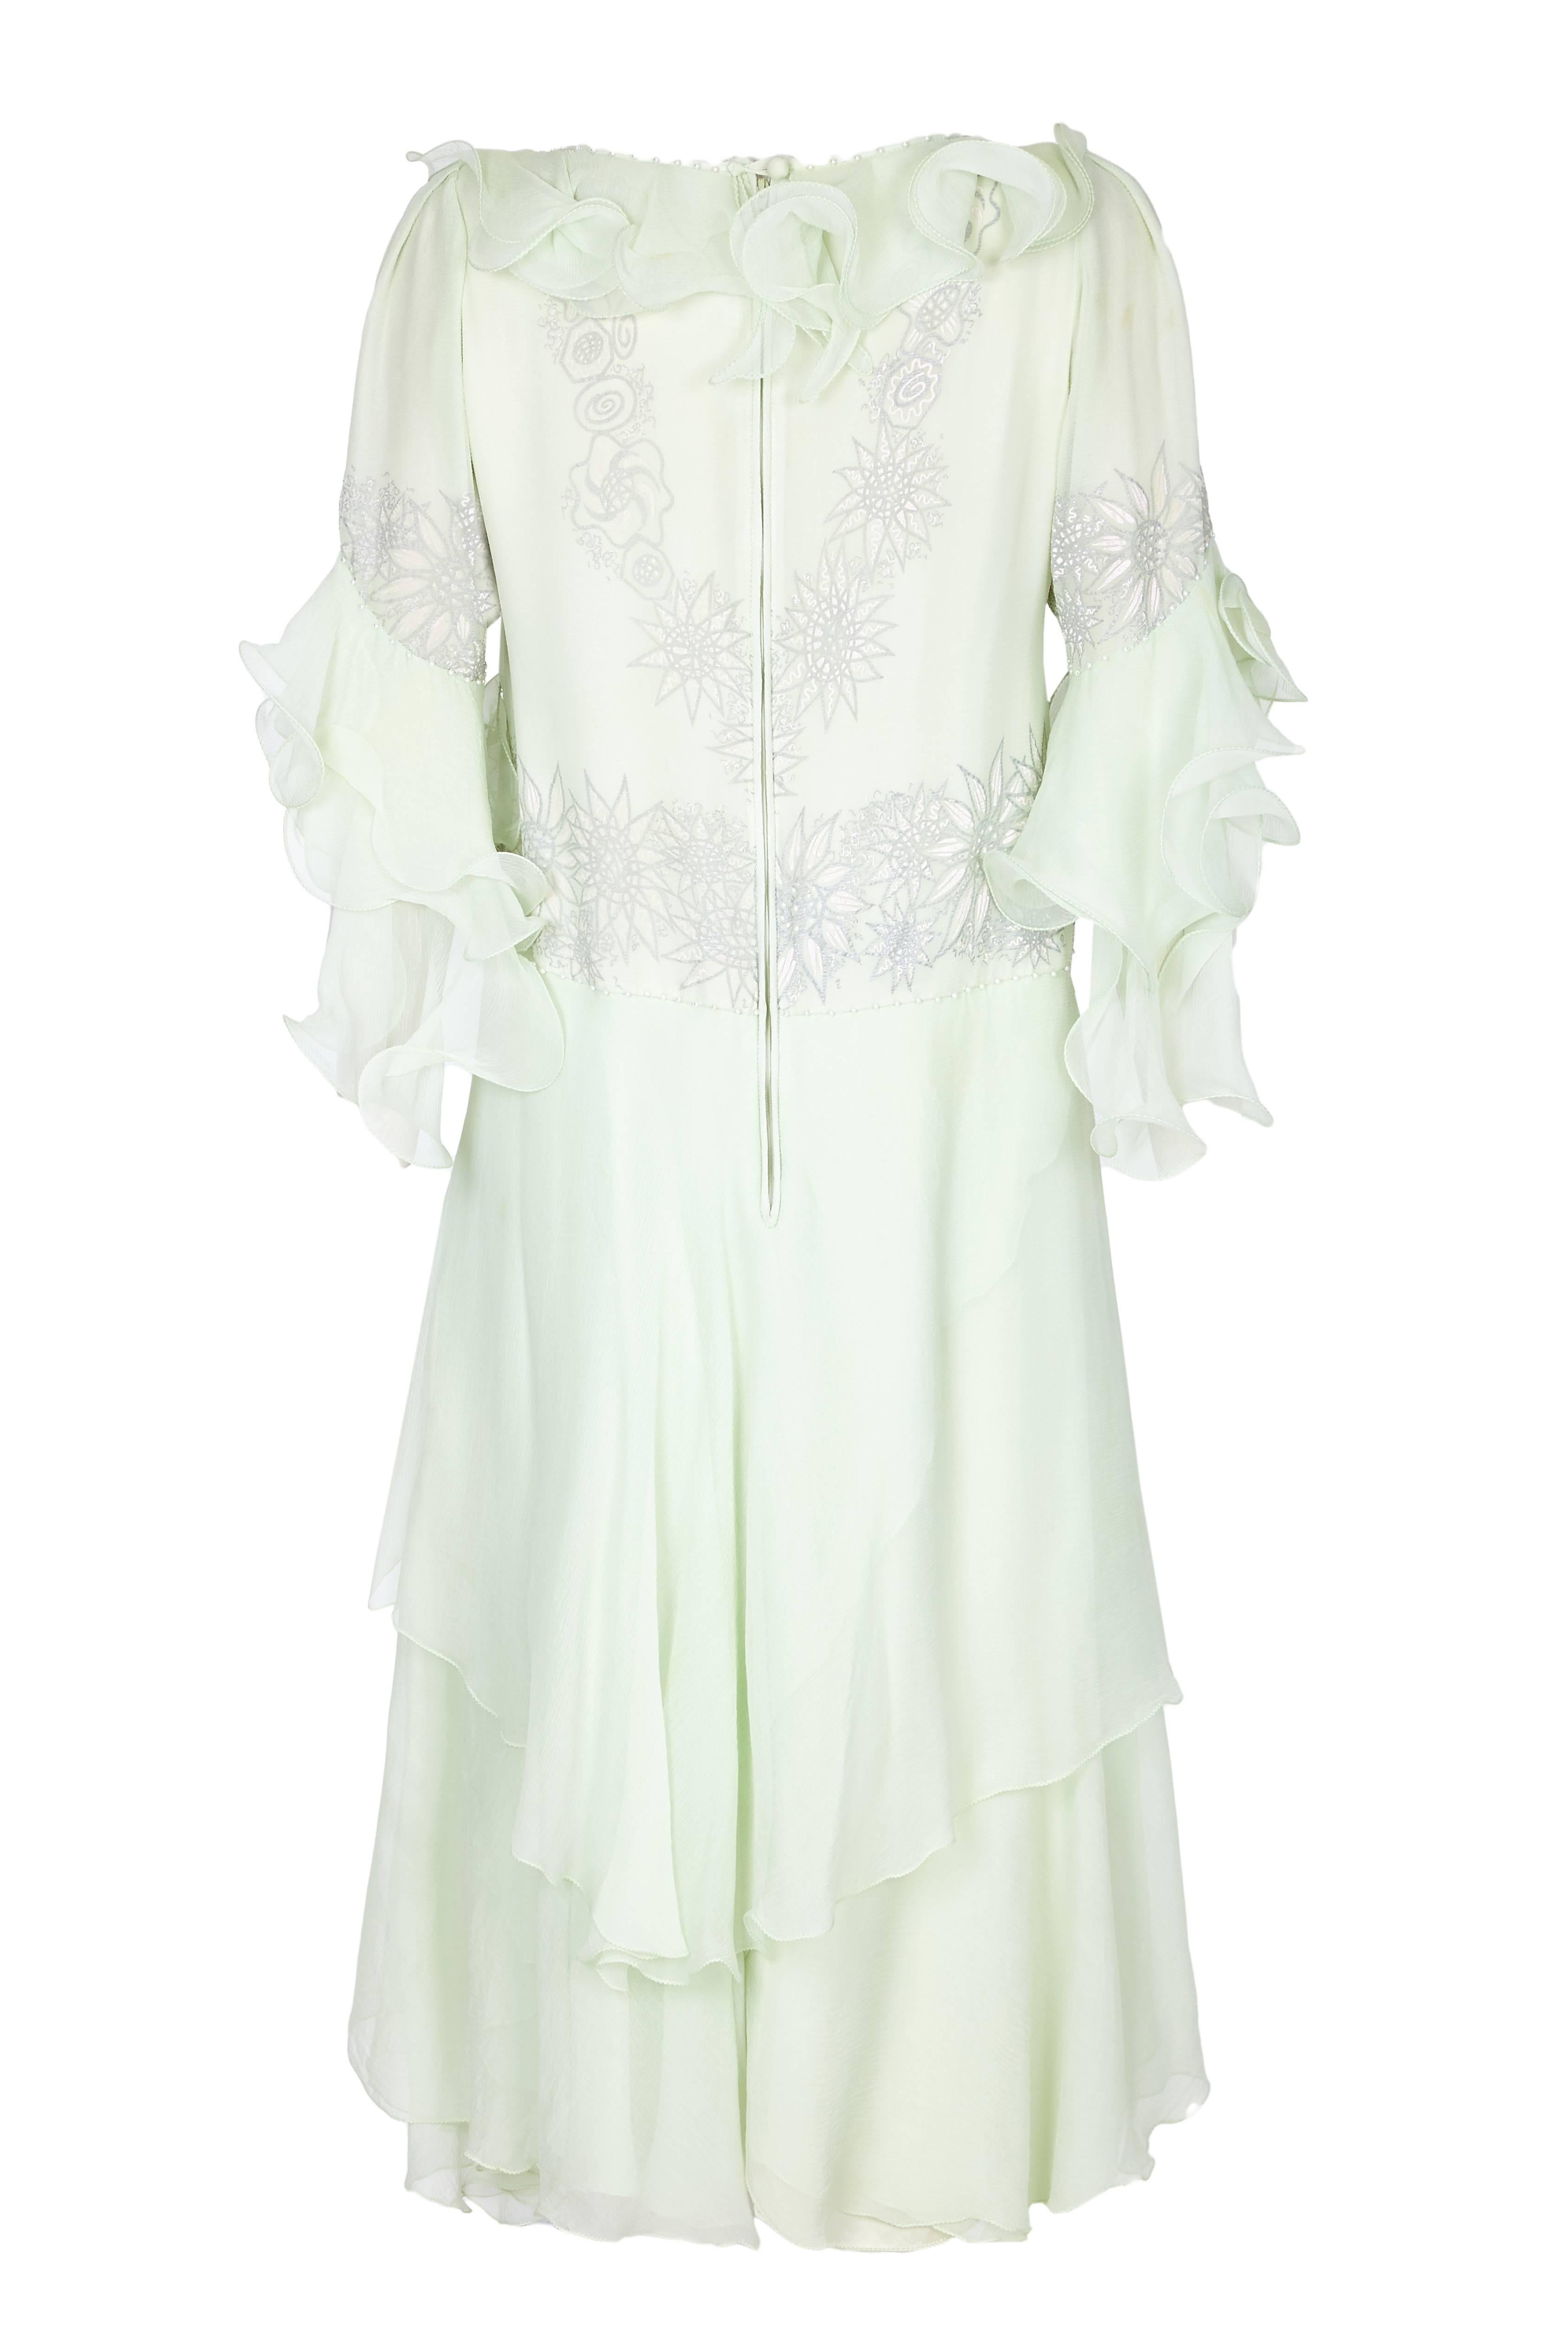 Erstaunlich Vintage 1980s Zandra Rhodes Couture blass grün Chiffon Kleid. Das Kleid ist mit einem wunderschönen handgemalten weißen und grauen Blumenmuster verziert, das mit verstreuten Perlen und Strasssteinen durchsetzt ist. Das Kleid ist gerade